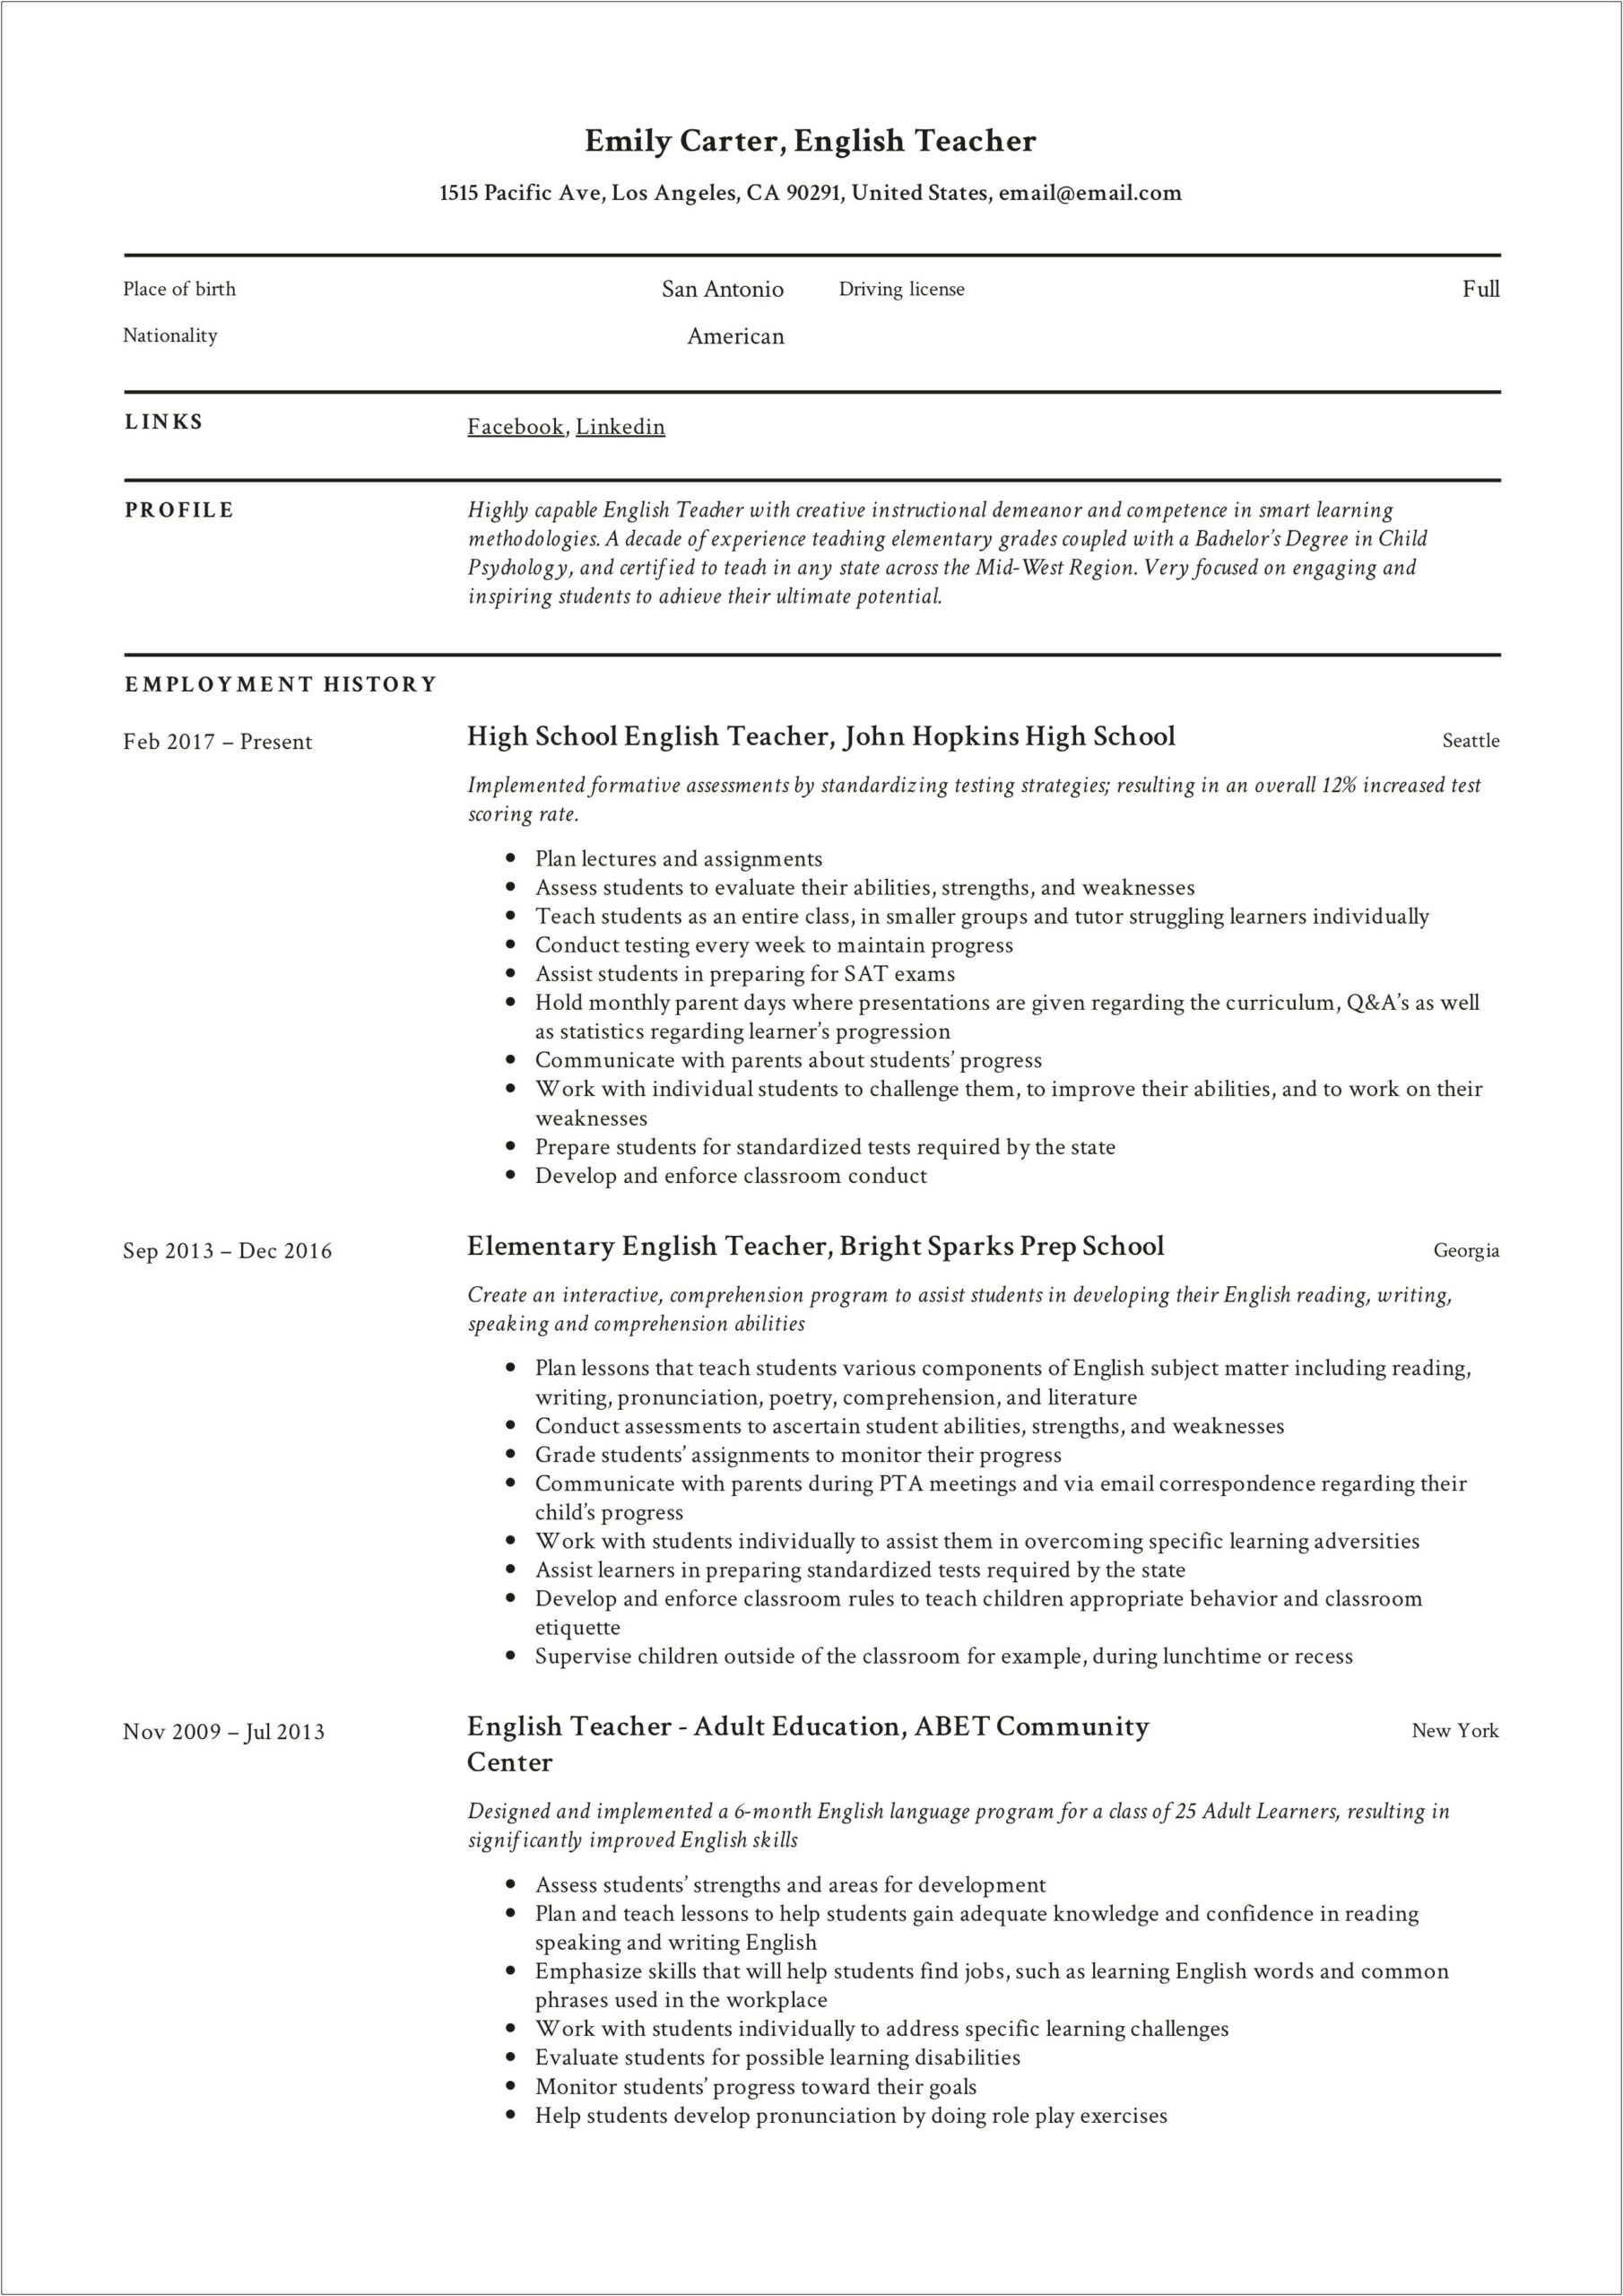 Sample Resume For Elementary Education Teacher